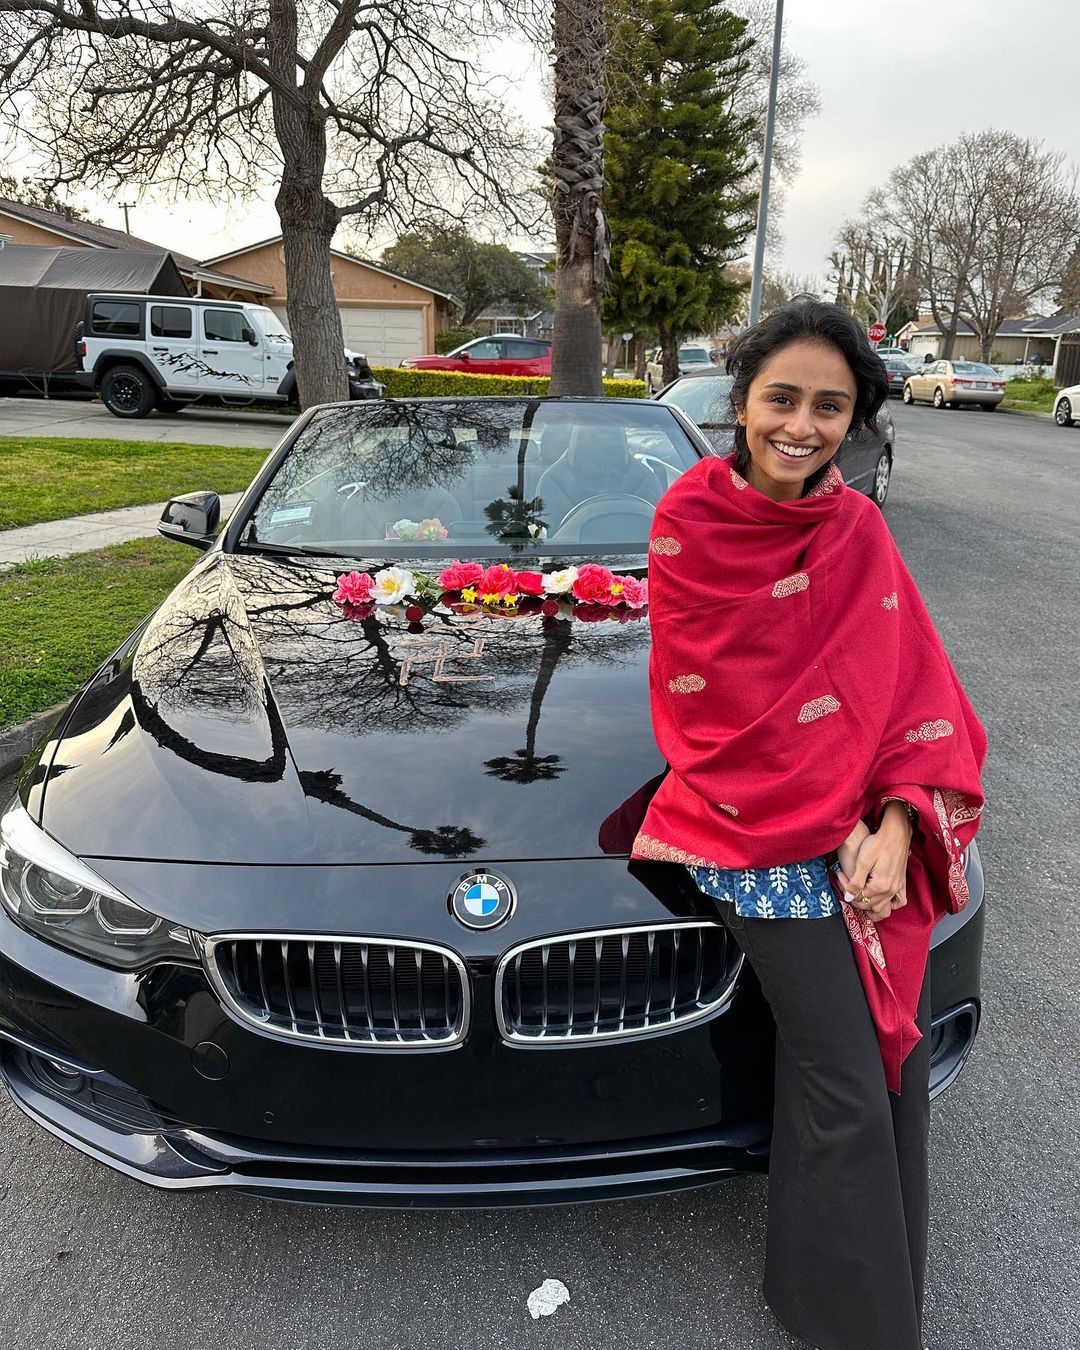 Pragathi Guruprasad bought a New BMW Car